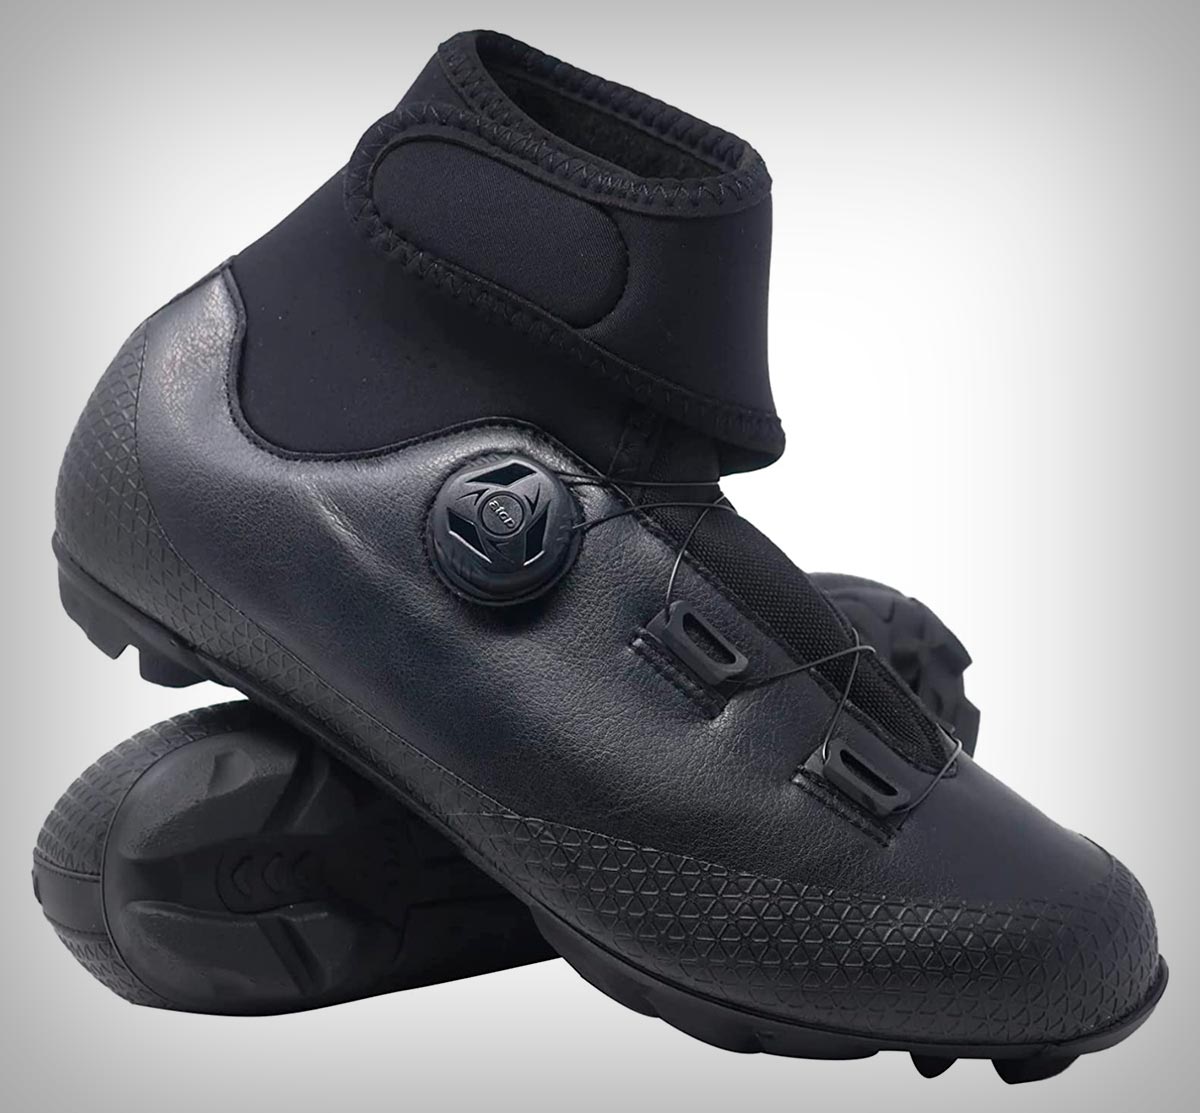 Adiós al frío en los pies con las Luck Winter MTB, unas zapatillas con suela de carbono, cierre rotativo y membrana térmica